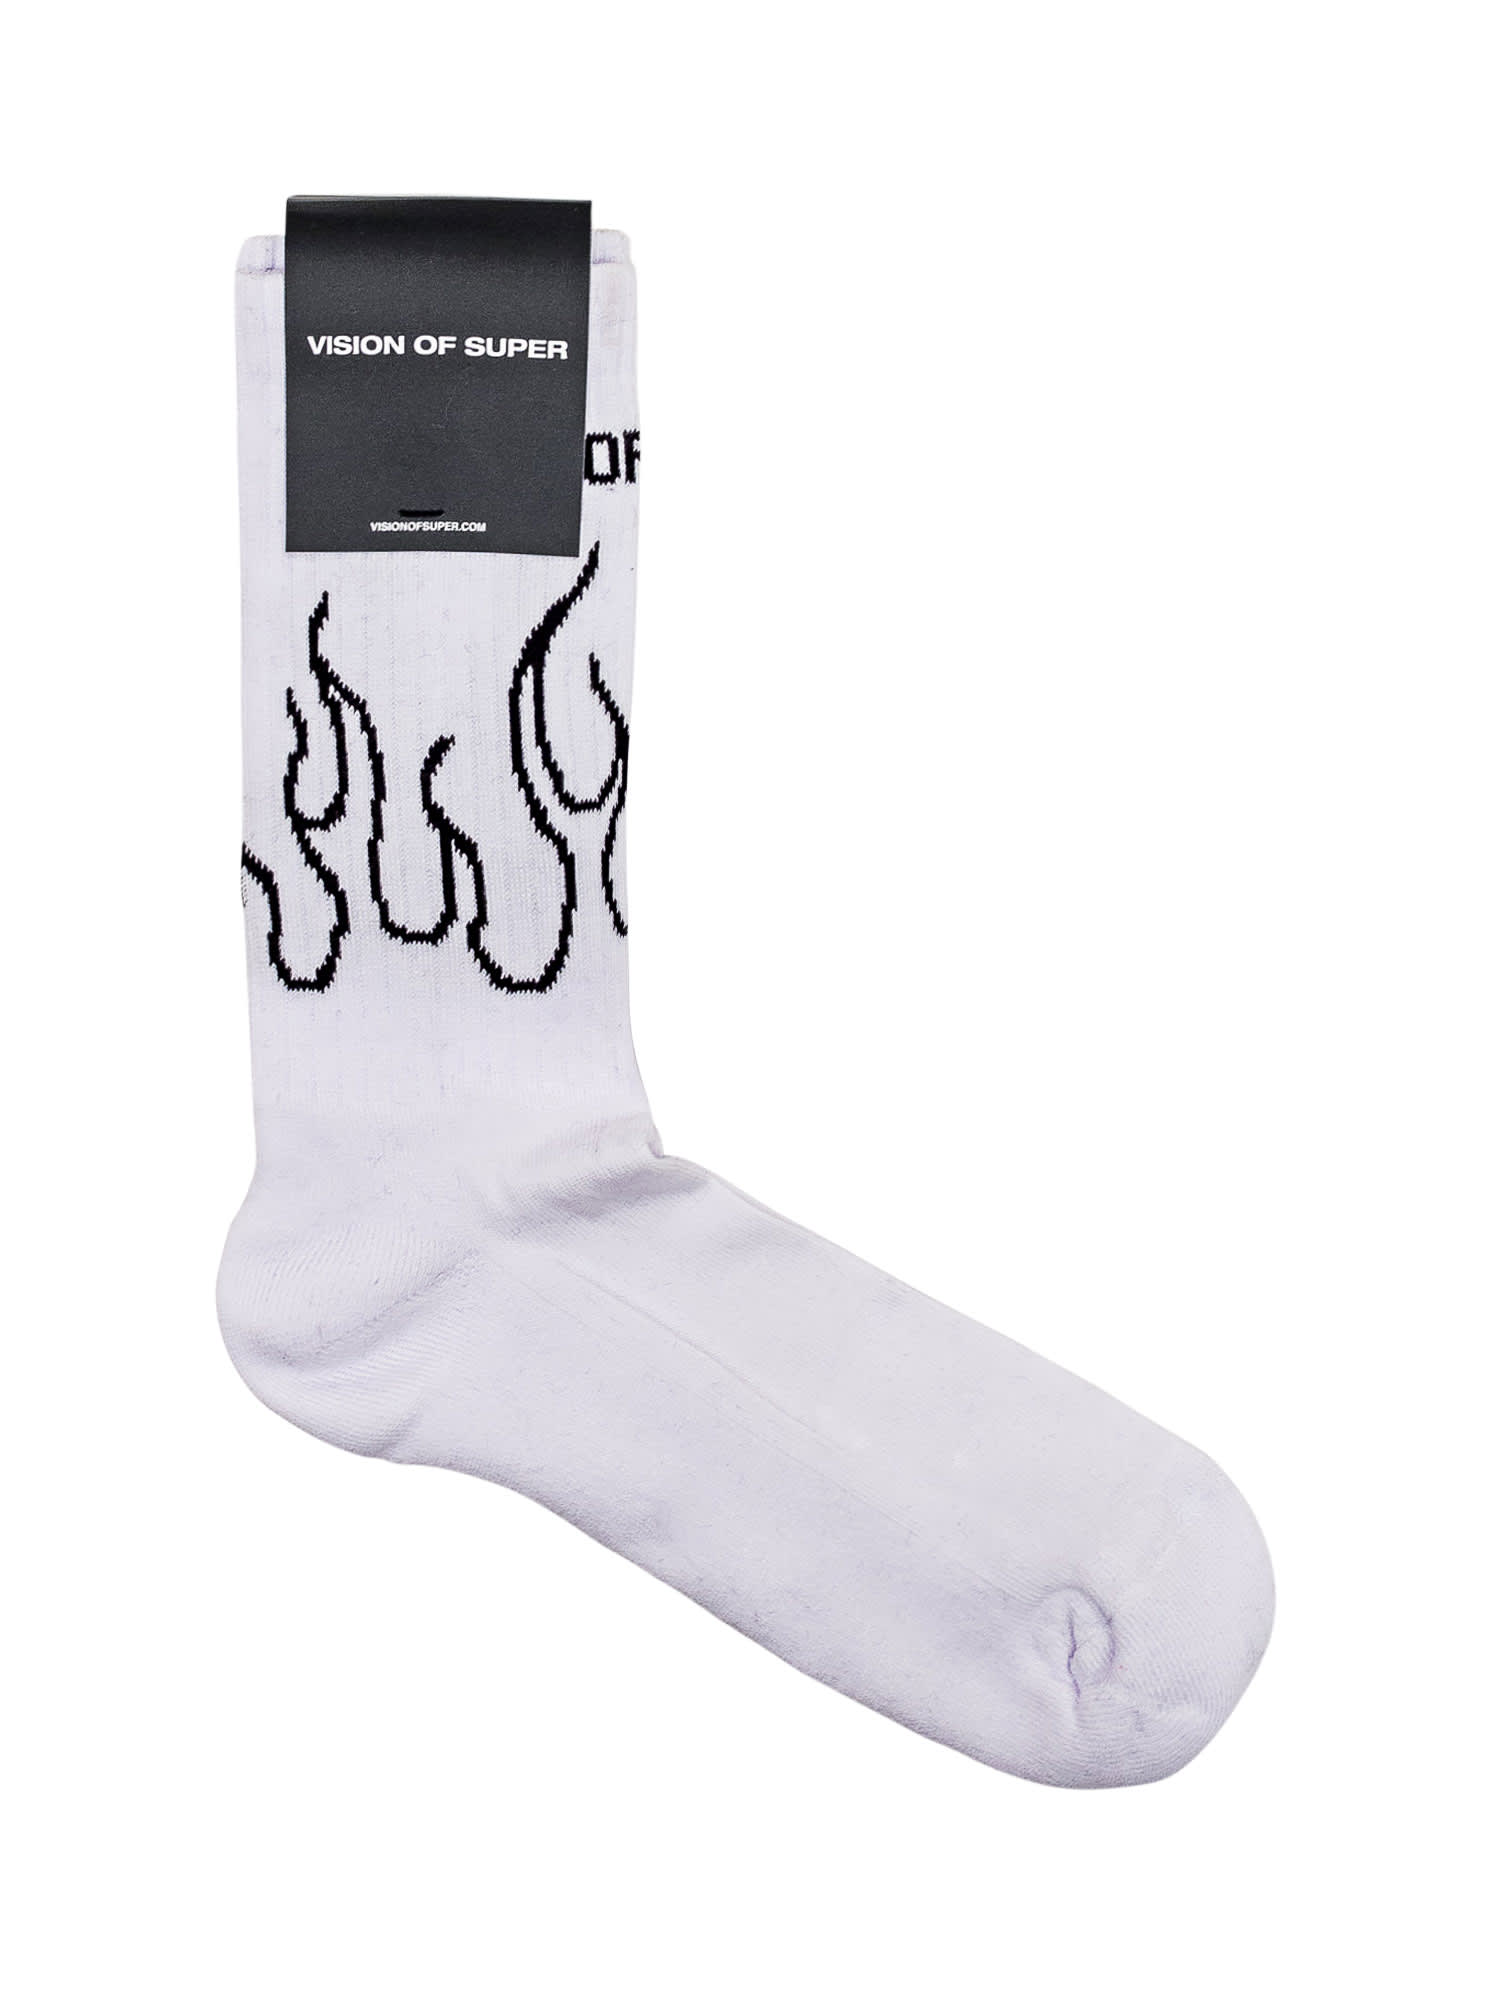 Flames Socks